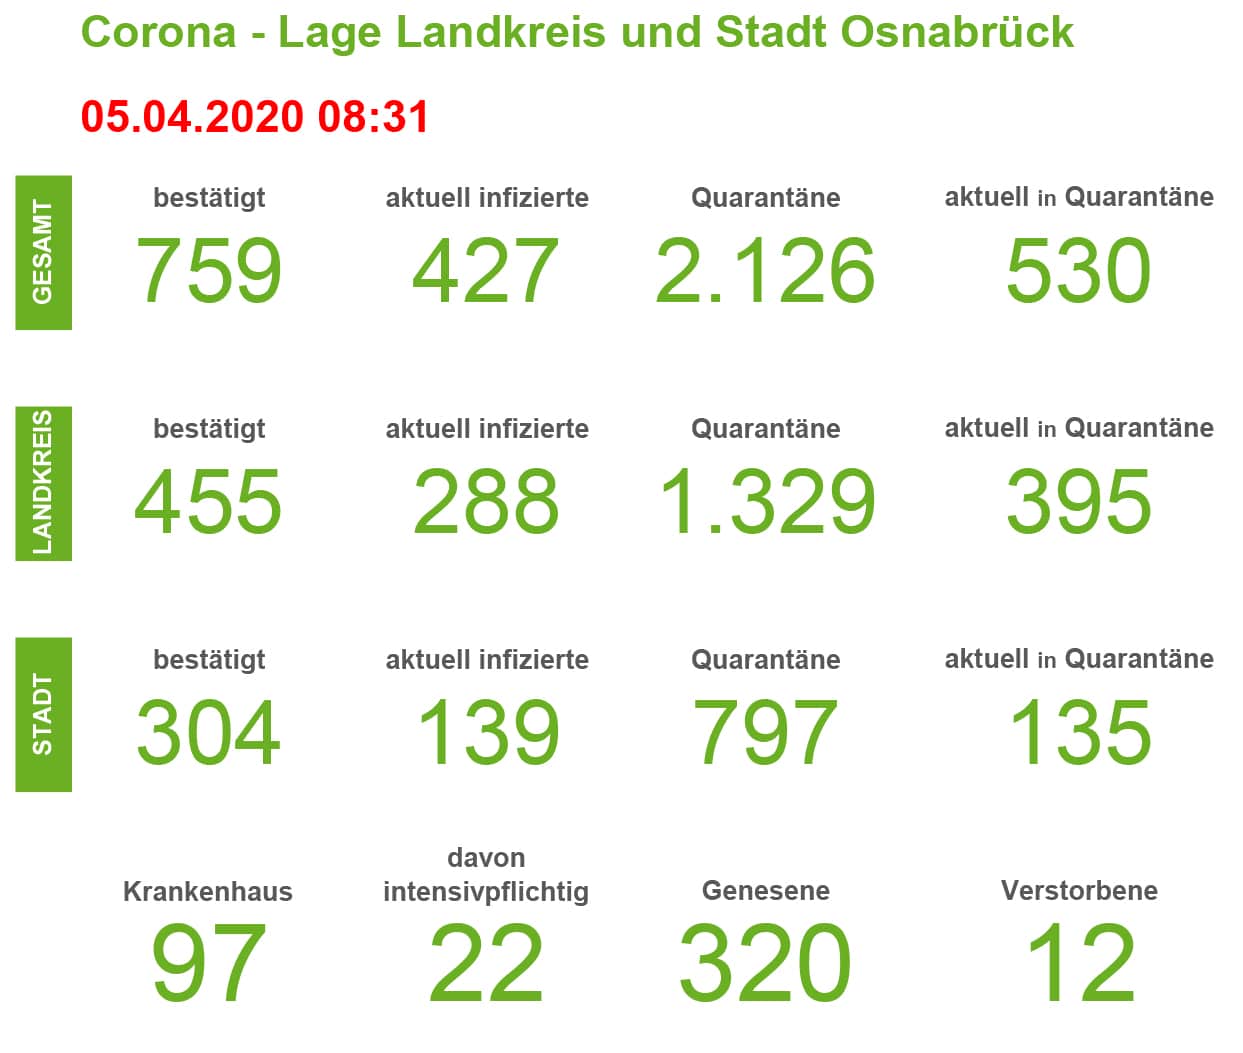 Vier Todesfälle in 24 Stunden: Aktuelles Lagebild für die Region Osnabrück zeigt schlimmen Verlauf